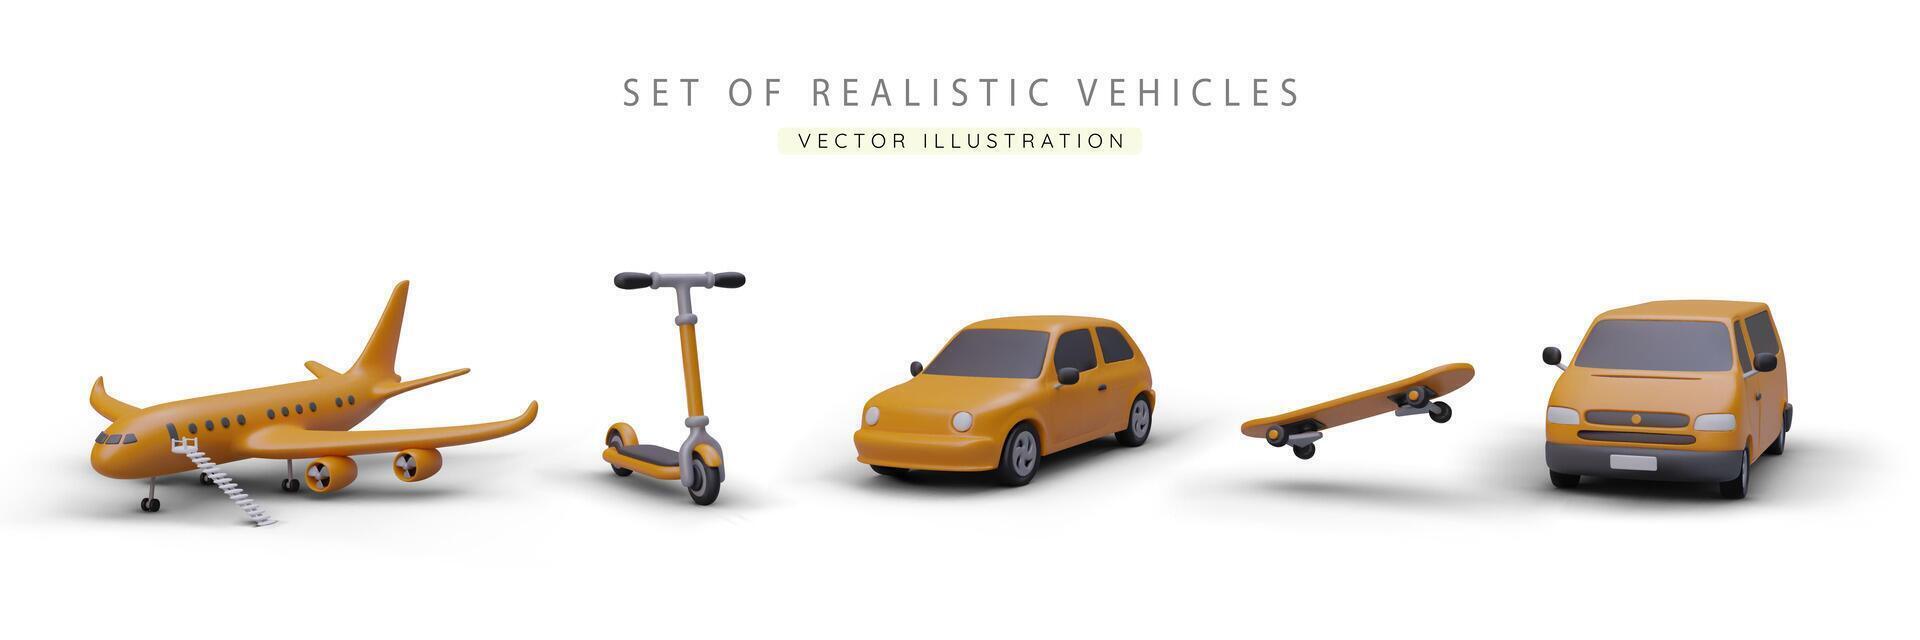 impostato di realistico 3d giallo macchina, autobus, aereo, skateboard e calcio scooter. manifesto con veicoli vettore